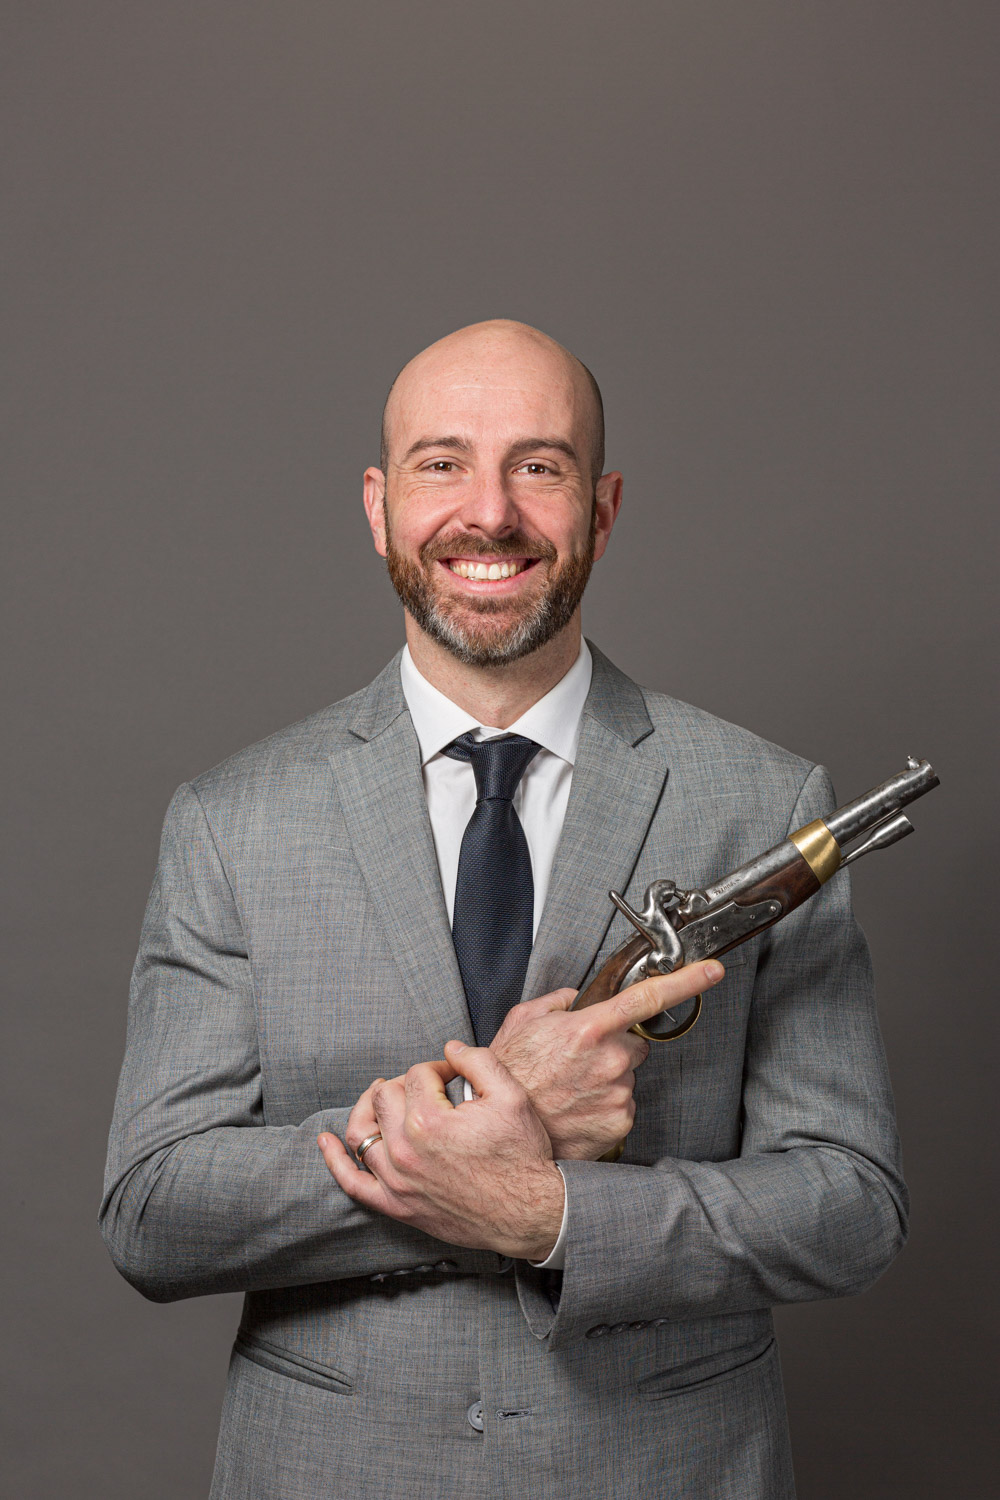 Un associés d'entreprise porte un ancien pistolet dans les mains pour une photographie portrait corporate